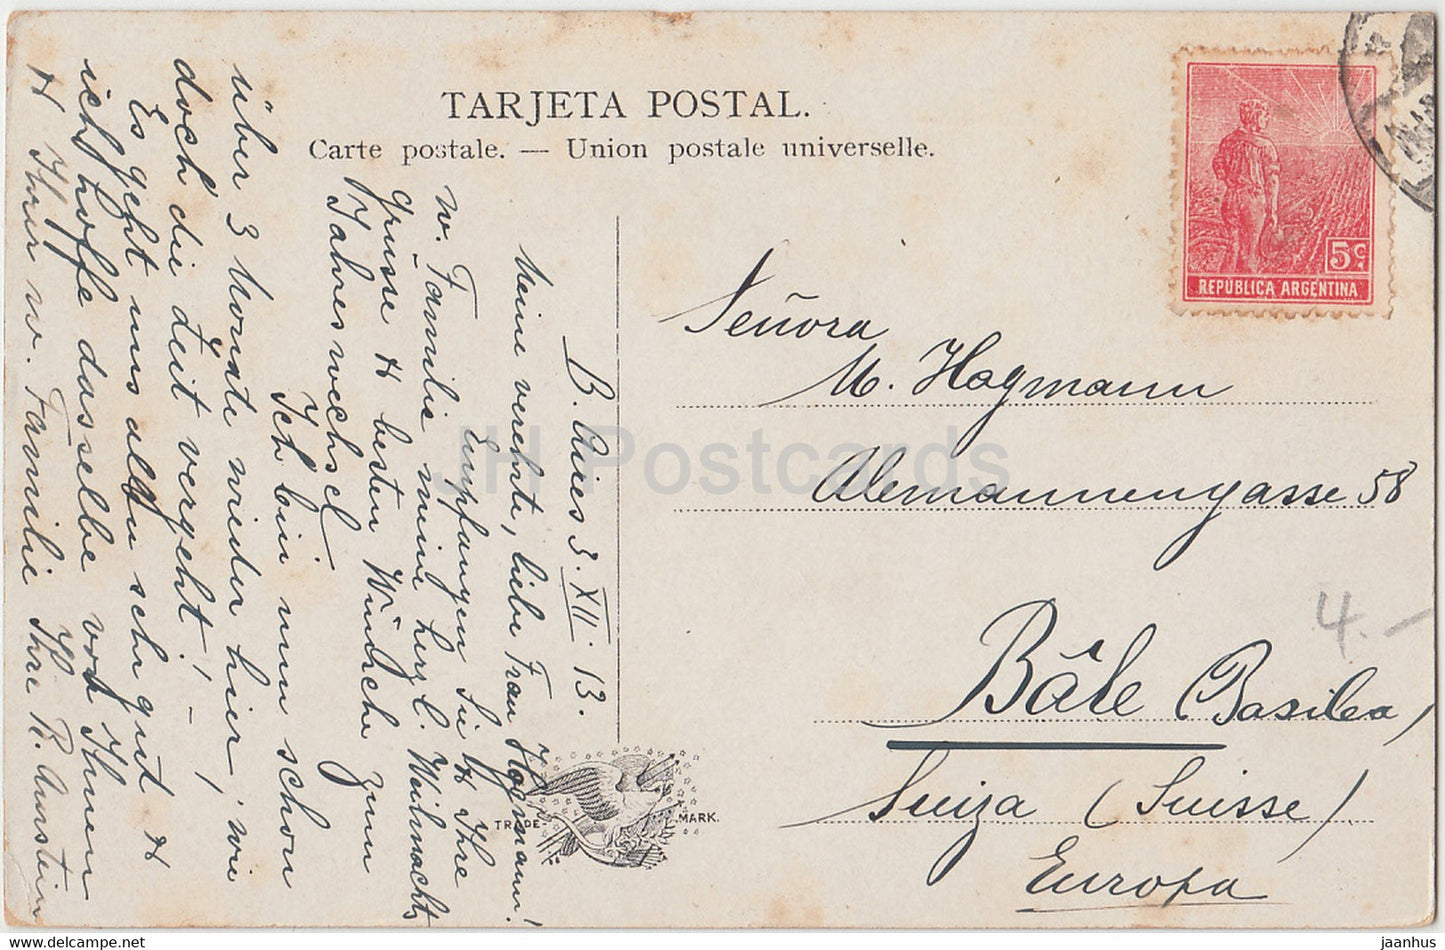 Punta Piedras - Mar del Plata - carte postale ancienne - 1913 - Argentine - utilisé